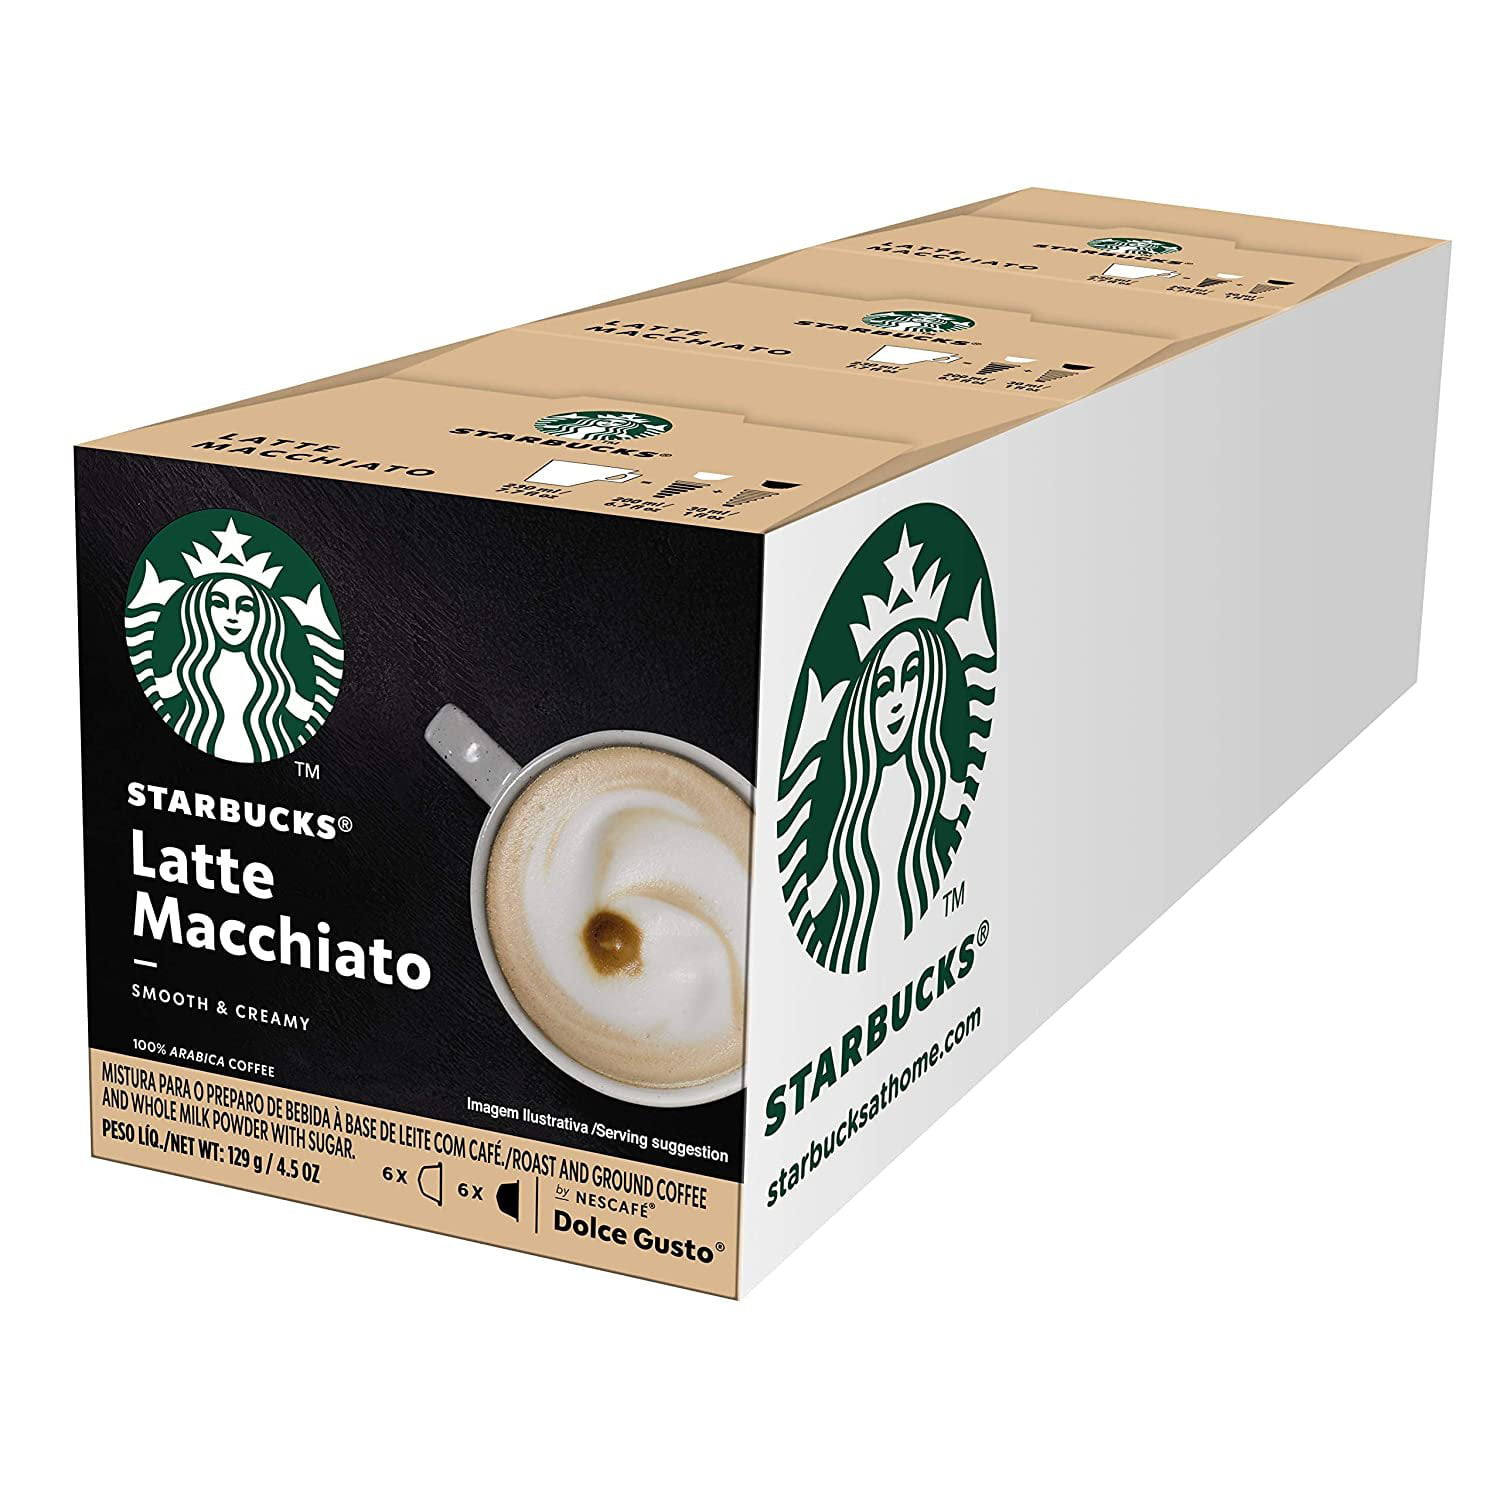 NESCAFE Dolce Gusto Caramel Latte Macchiato Coffee Pods, Espresso Roast,  Single Serve Coffee Capsules, 48 Pods (24 Servings) 